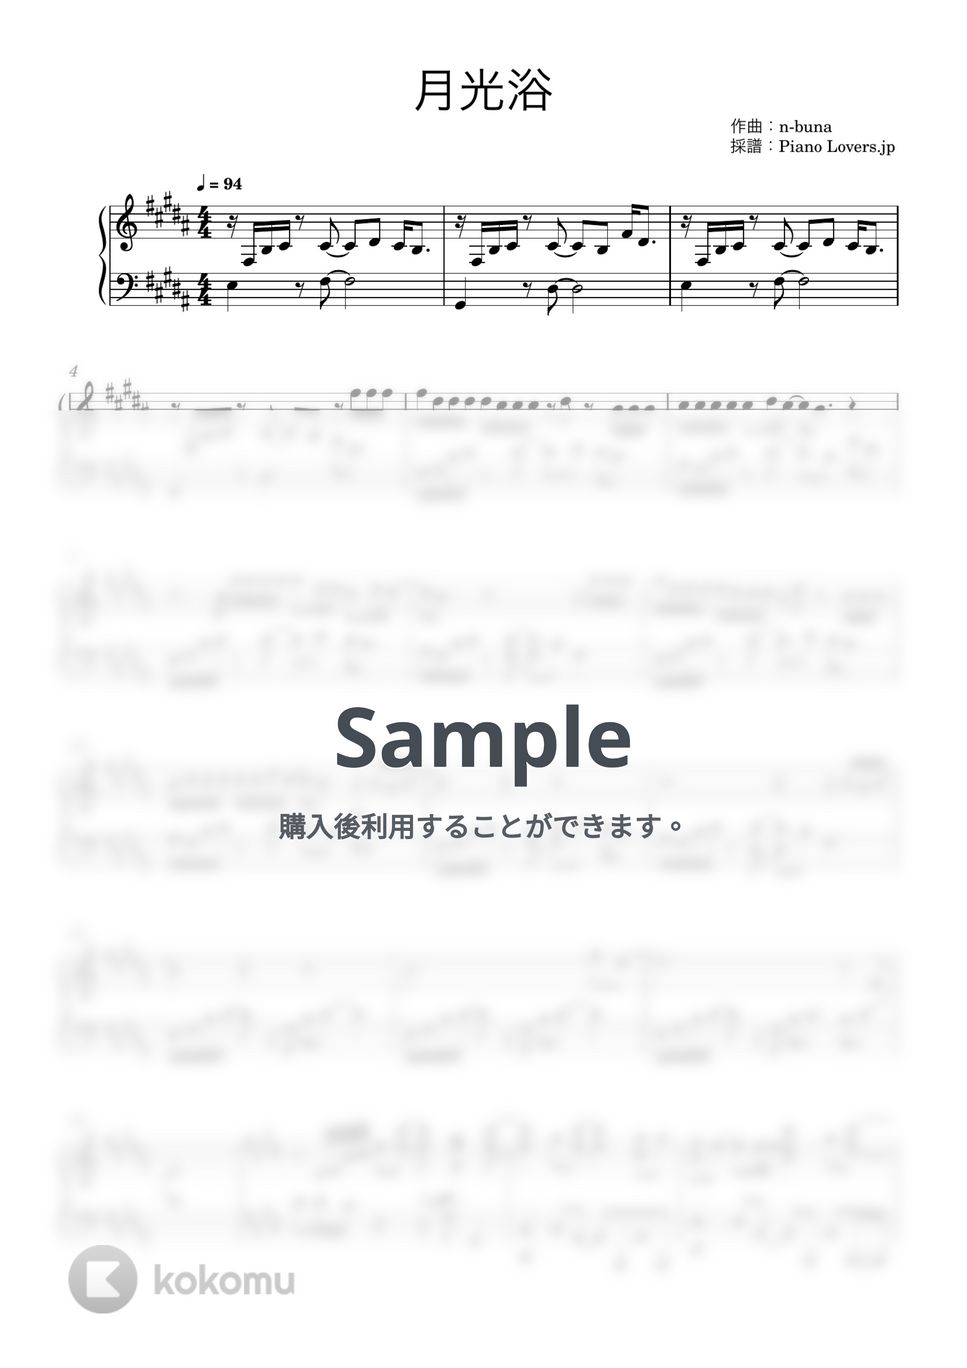 ヨルシカ - 月光浴 (大雪海のカイナ / ピアノ楽譜) by Piano Lovers. jp